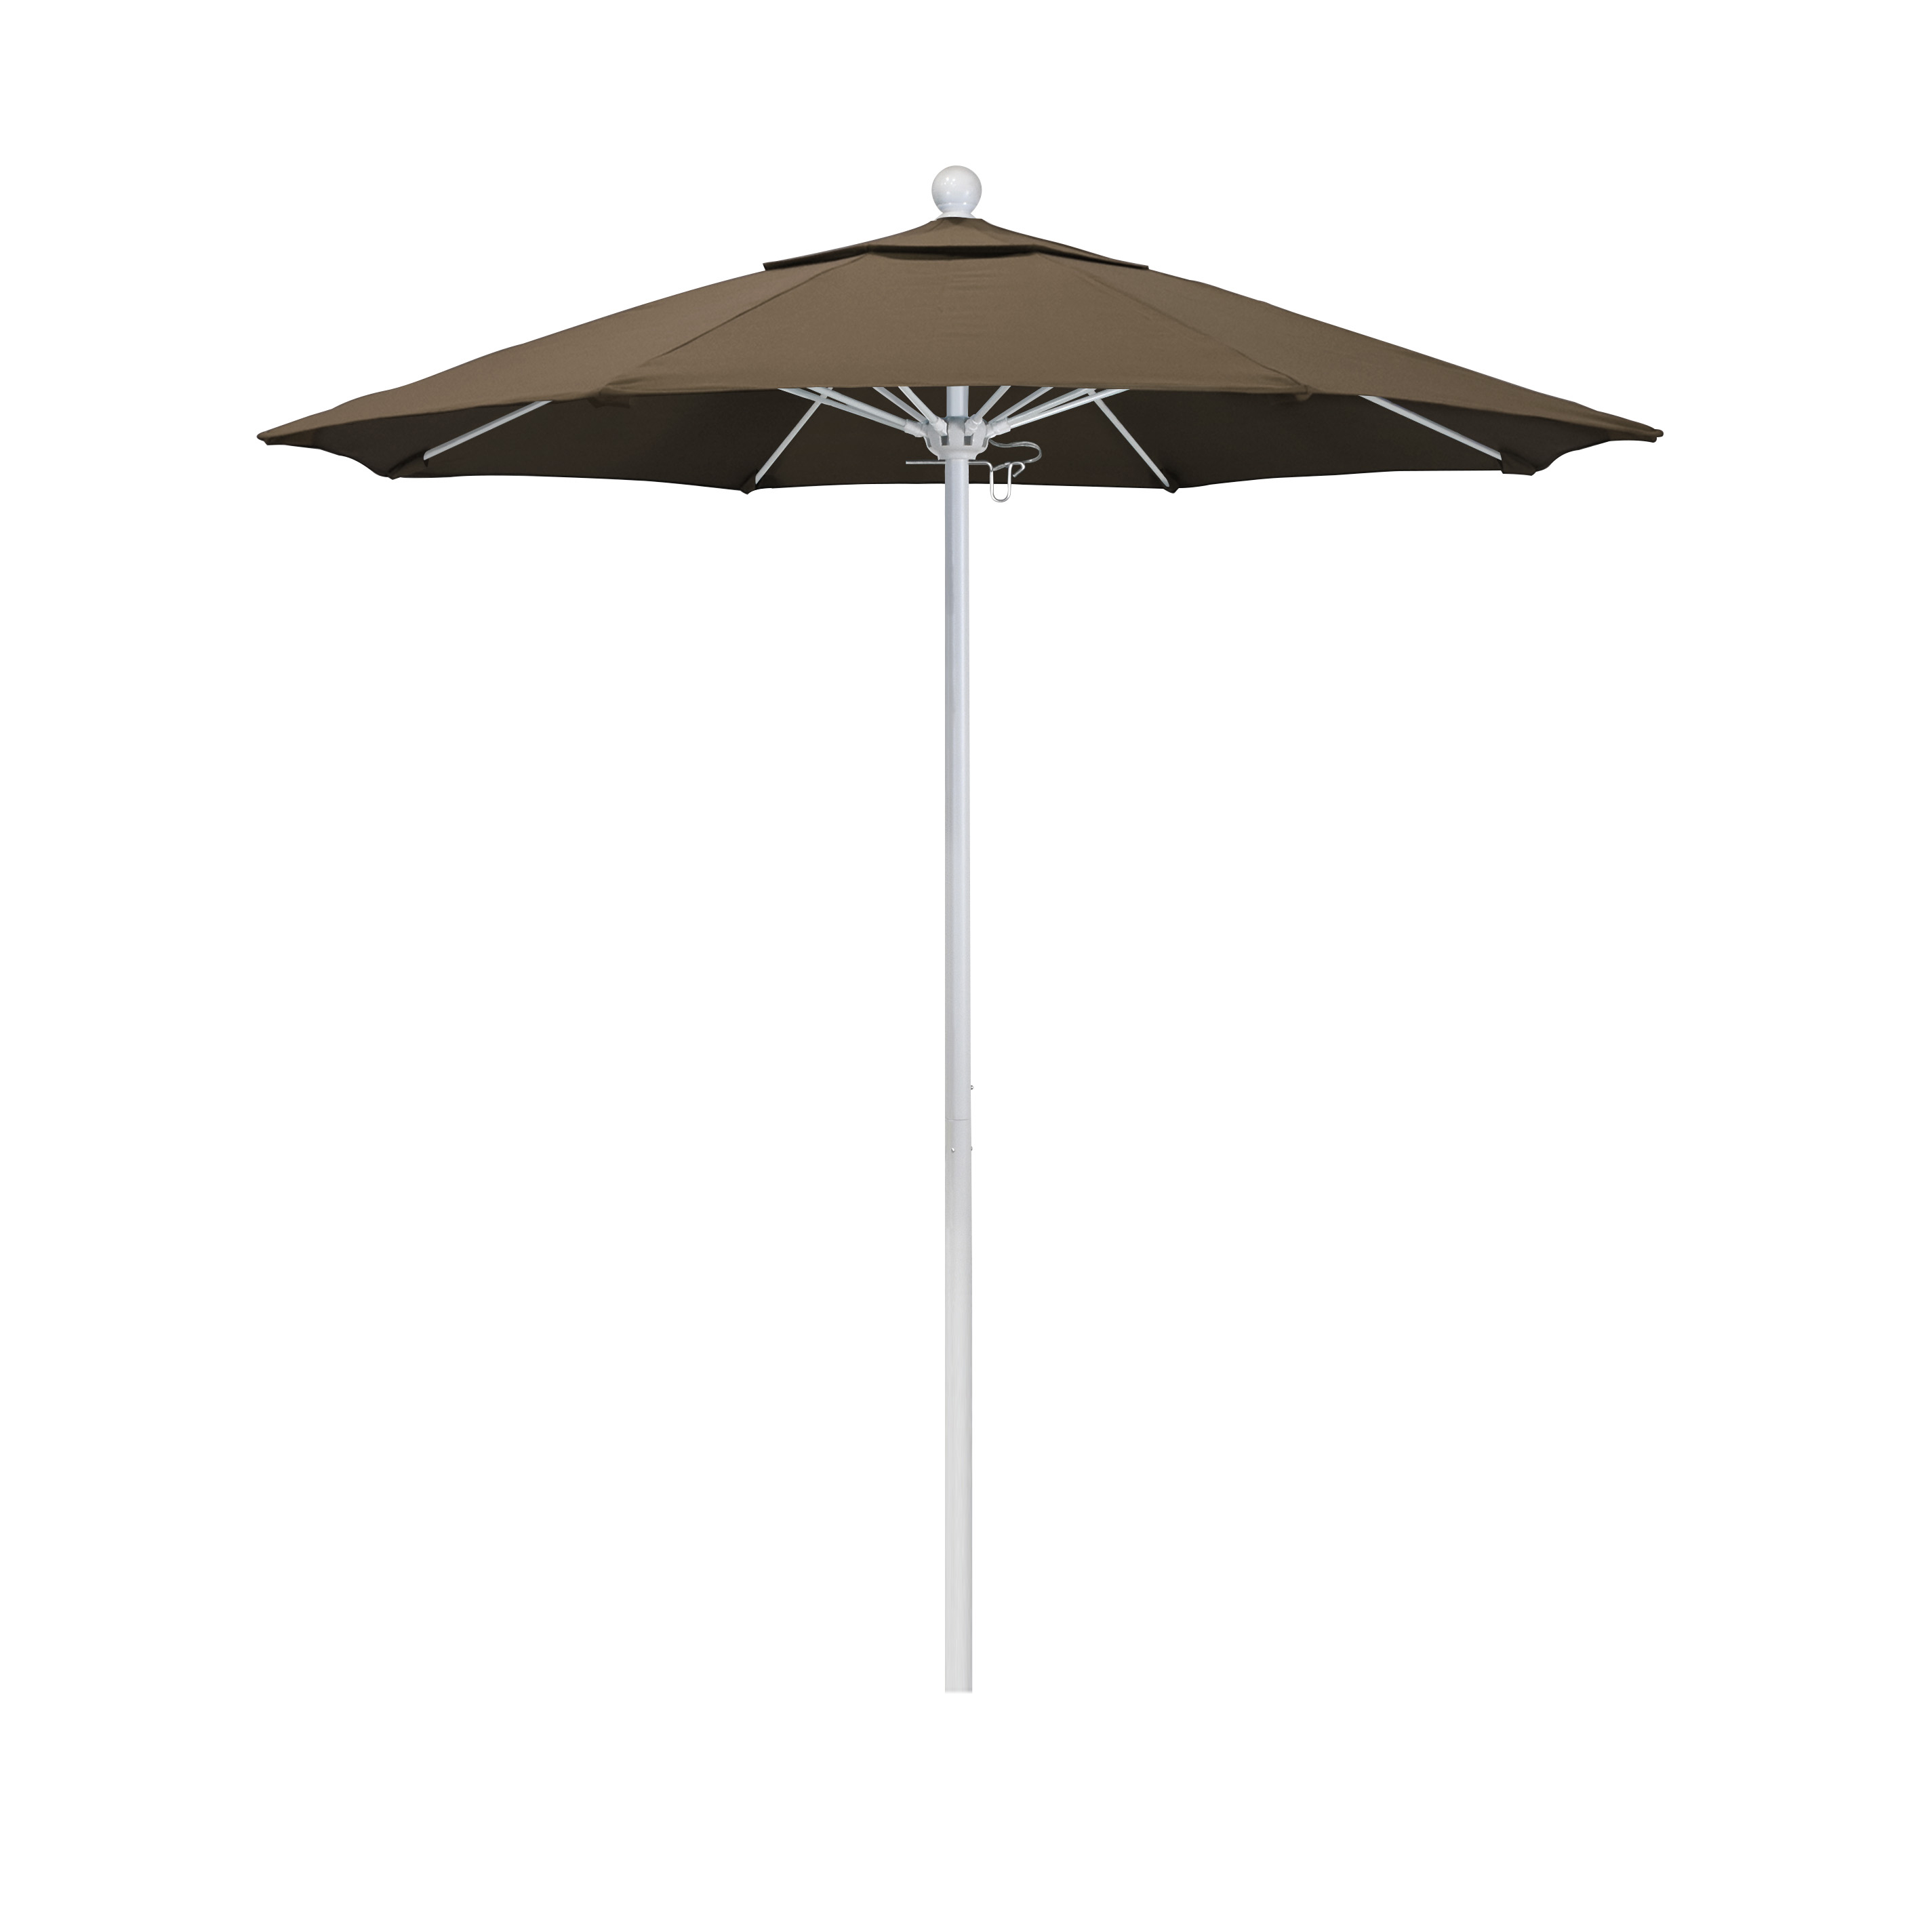 Alto758170-5425 7.5 Ft. Fiberglass Pulley Open Market Umbrella - Matted White And Sunbrella-cocoa